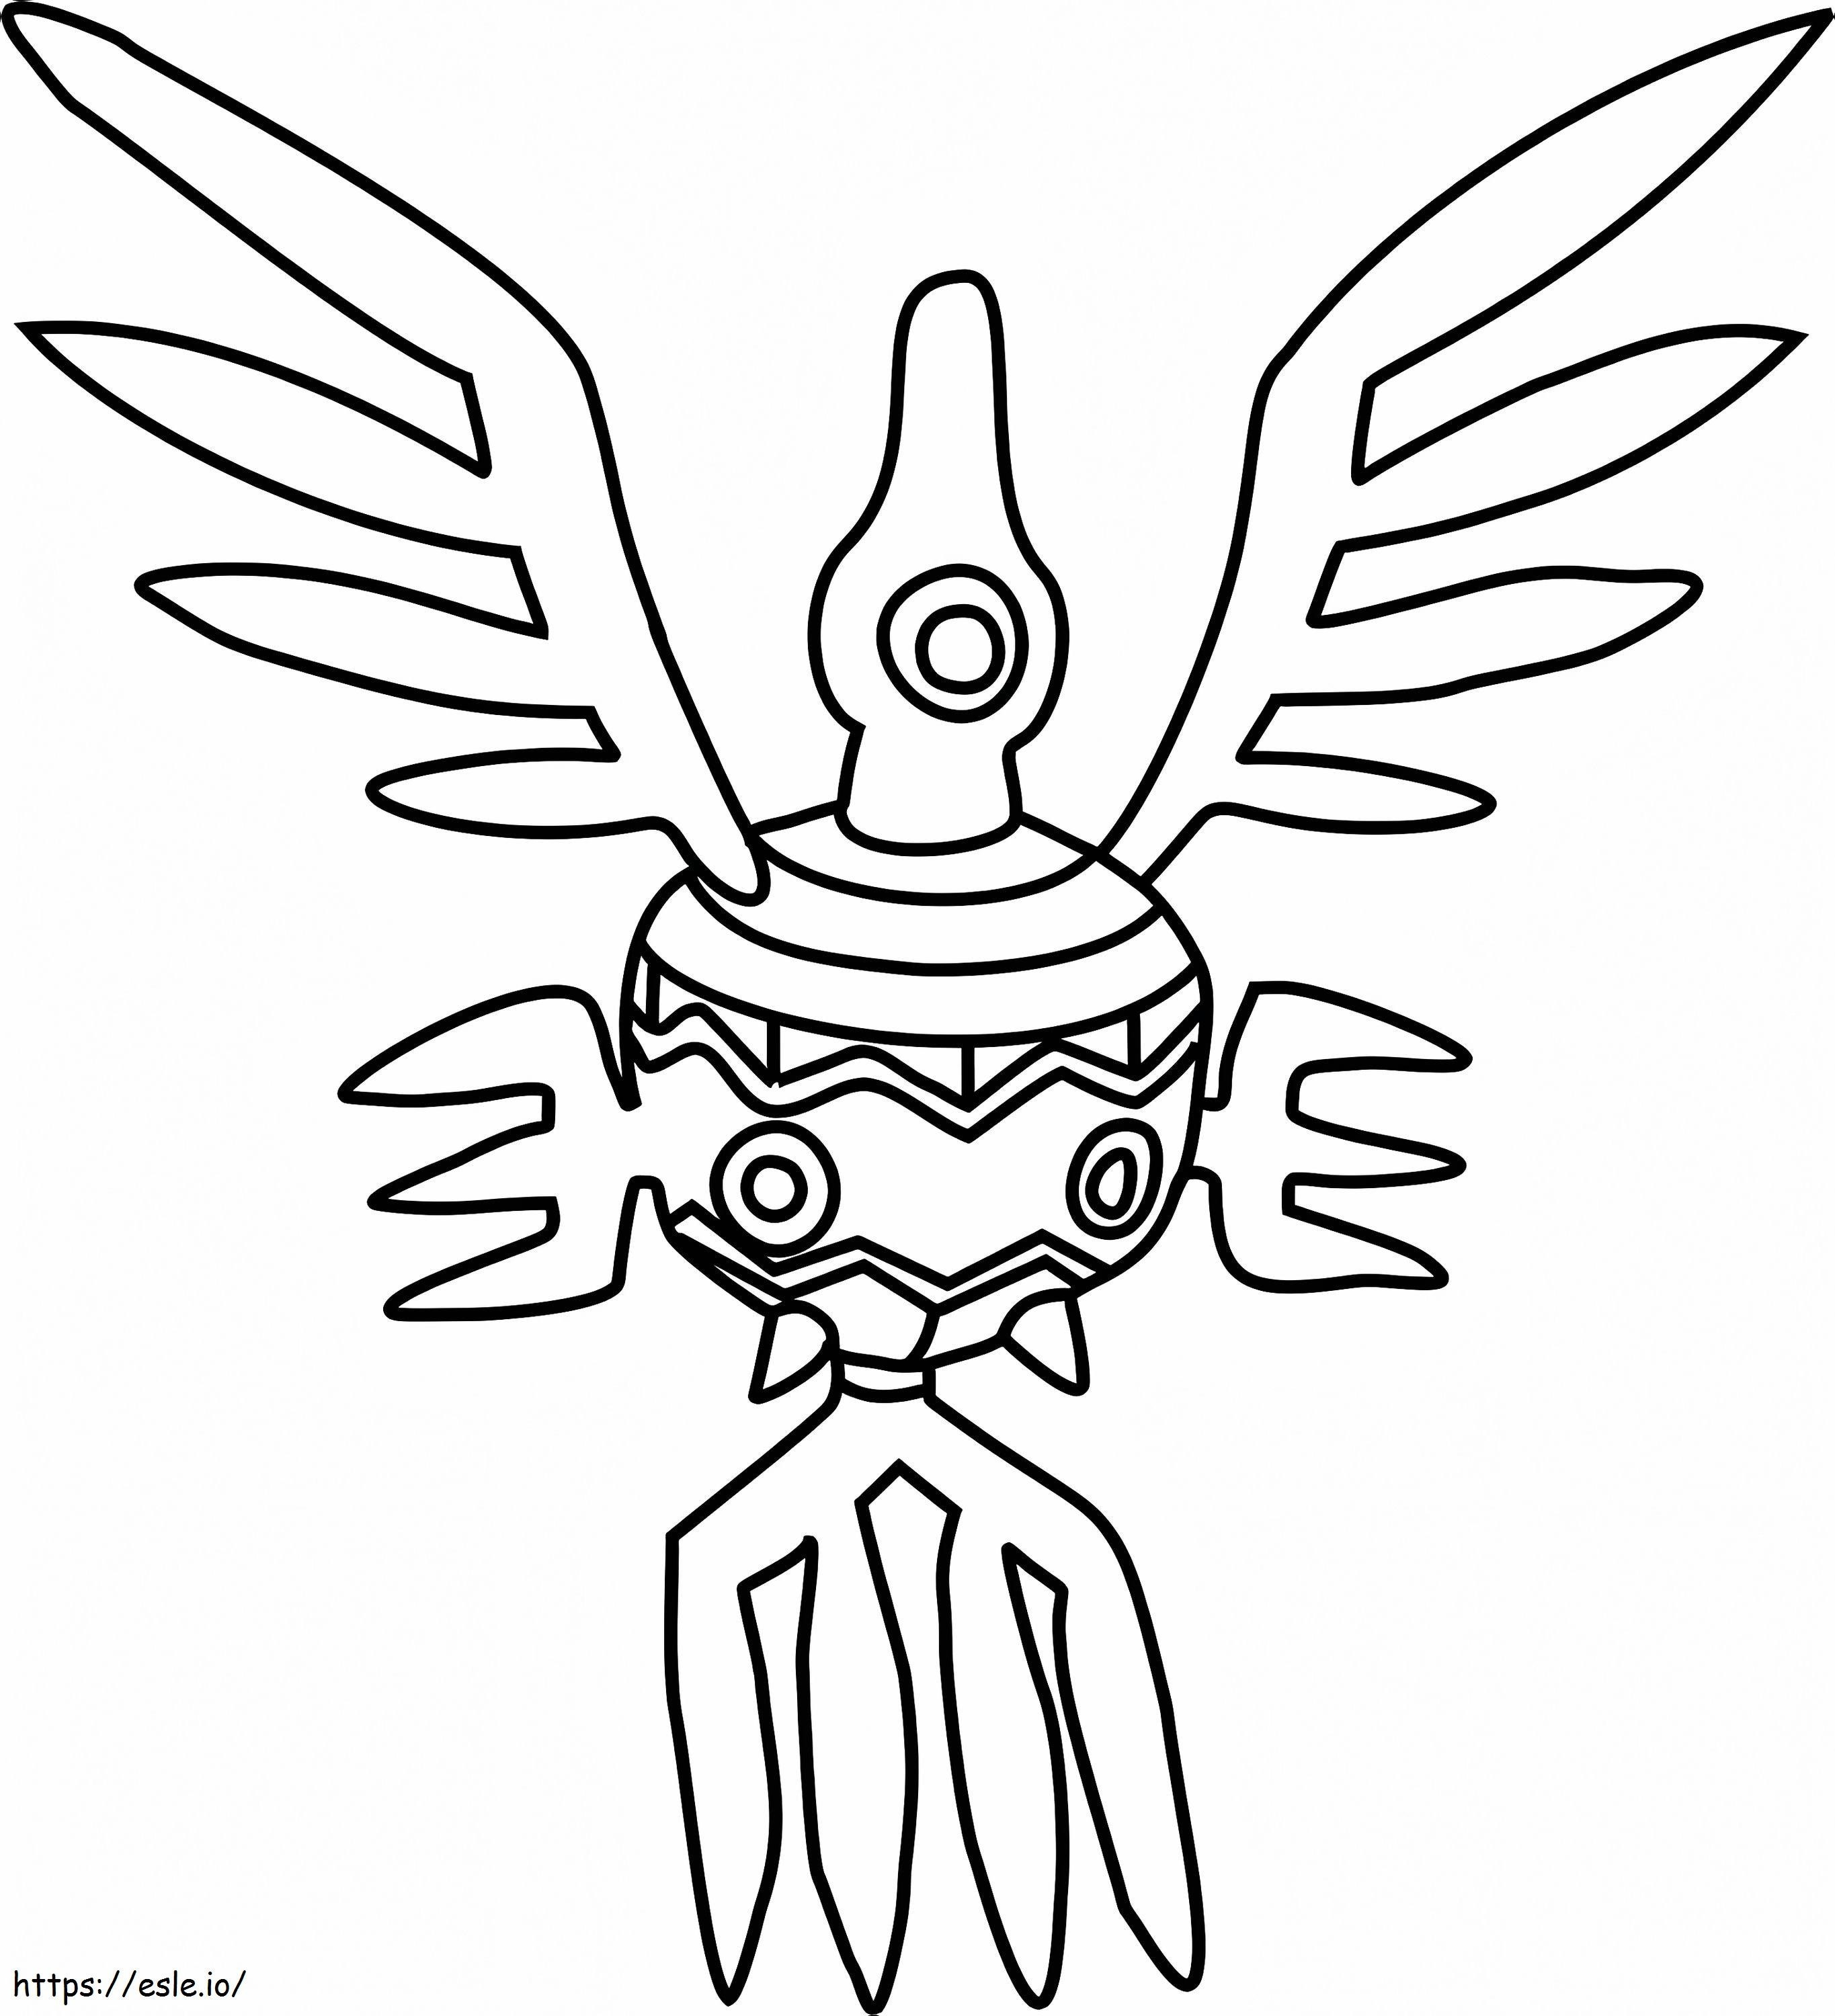 Coloriage Pokémon Sigilyphe Gen 5 à imprimer dessin